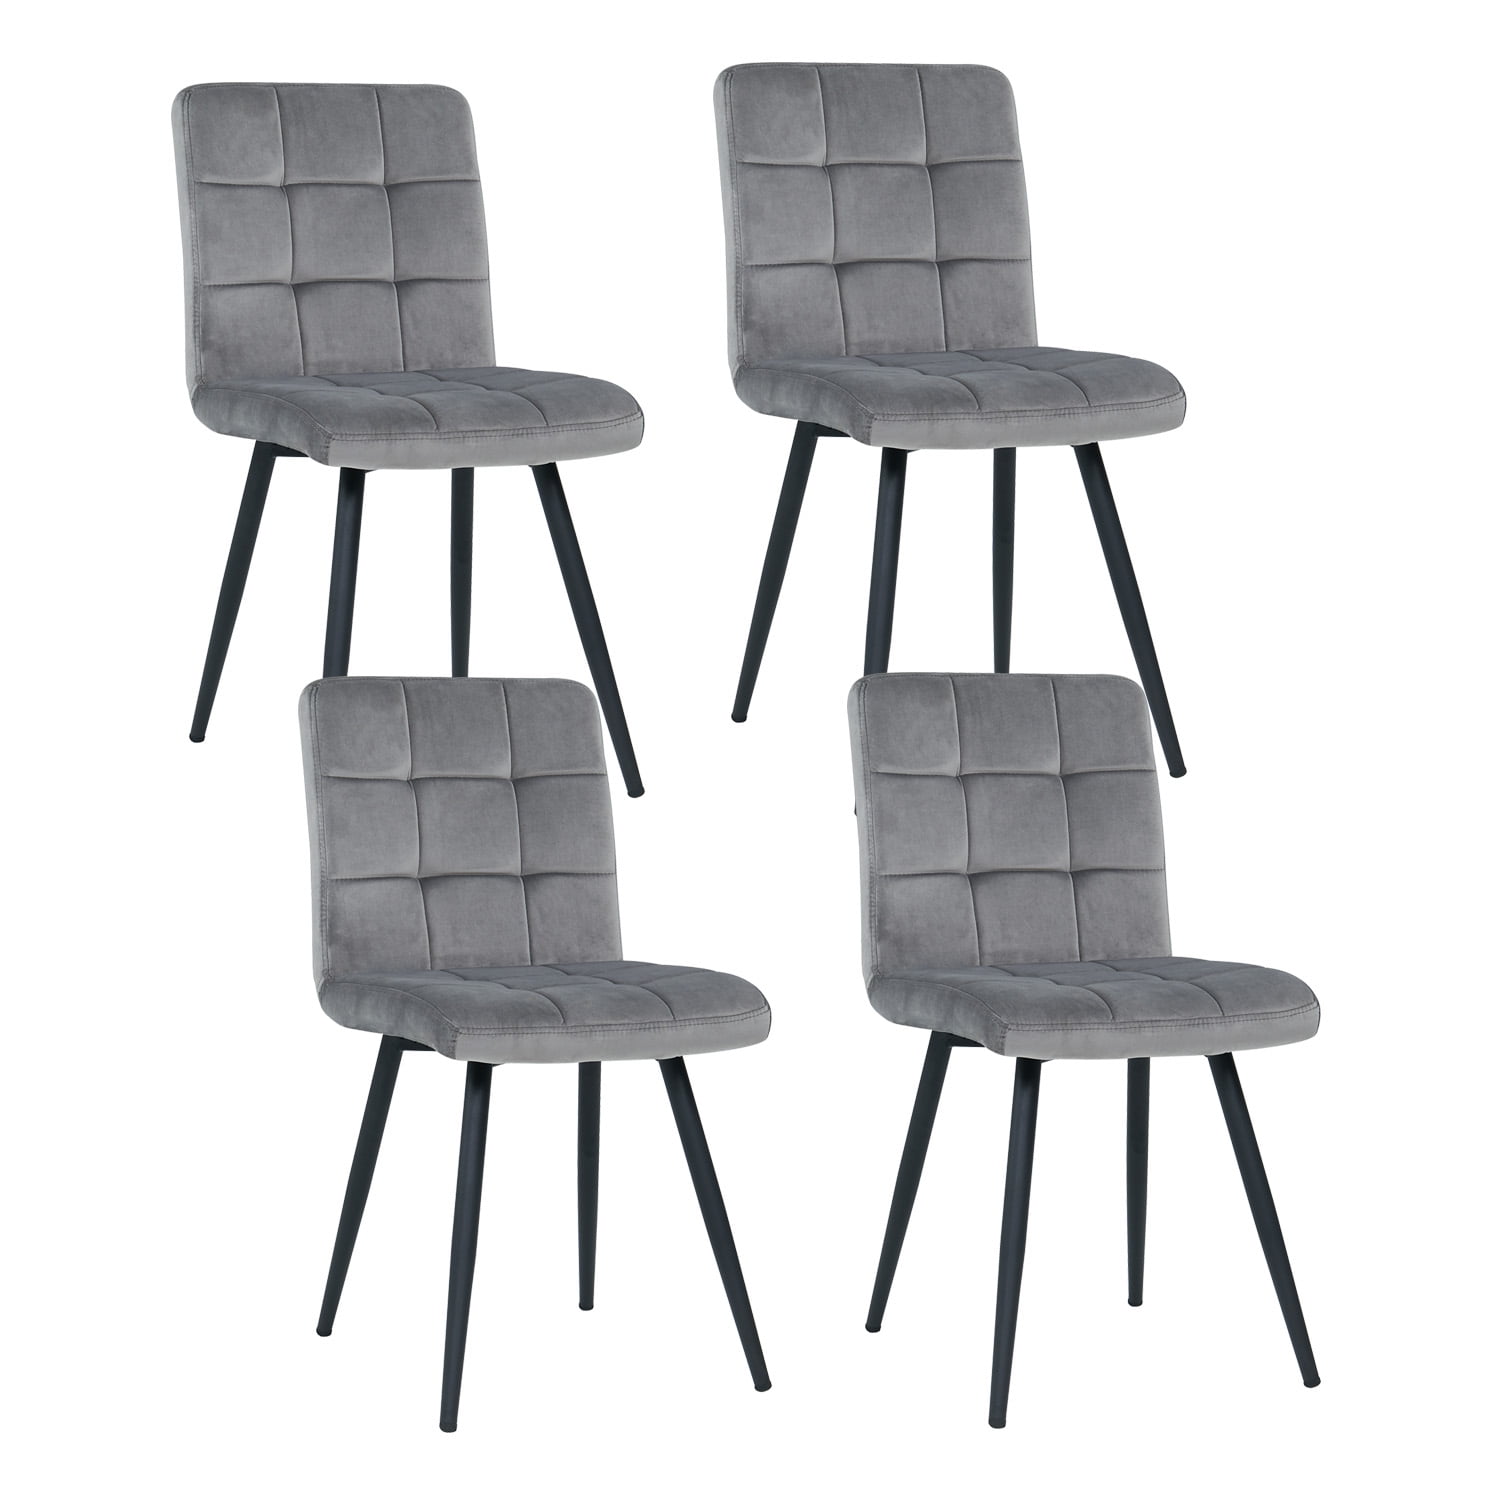 Кресла и стулья Accent - доступные и современные - IKEA